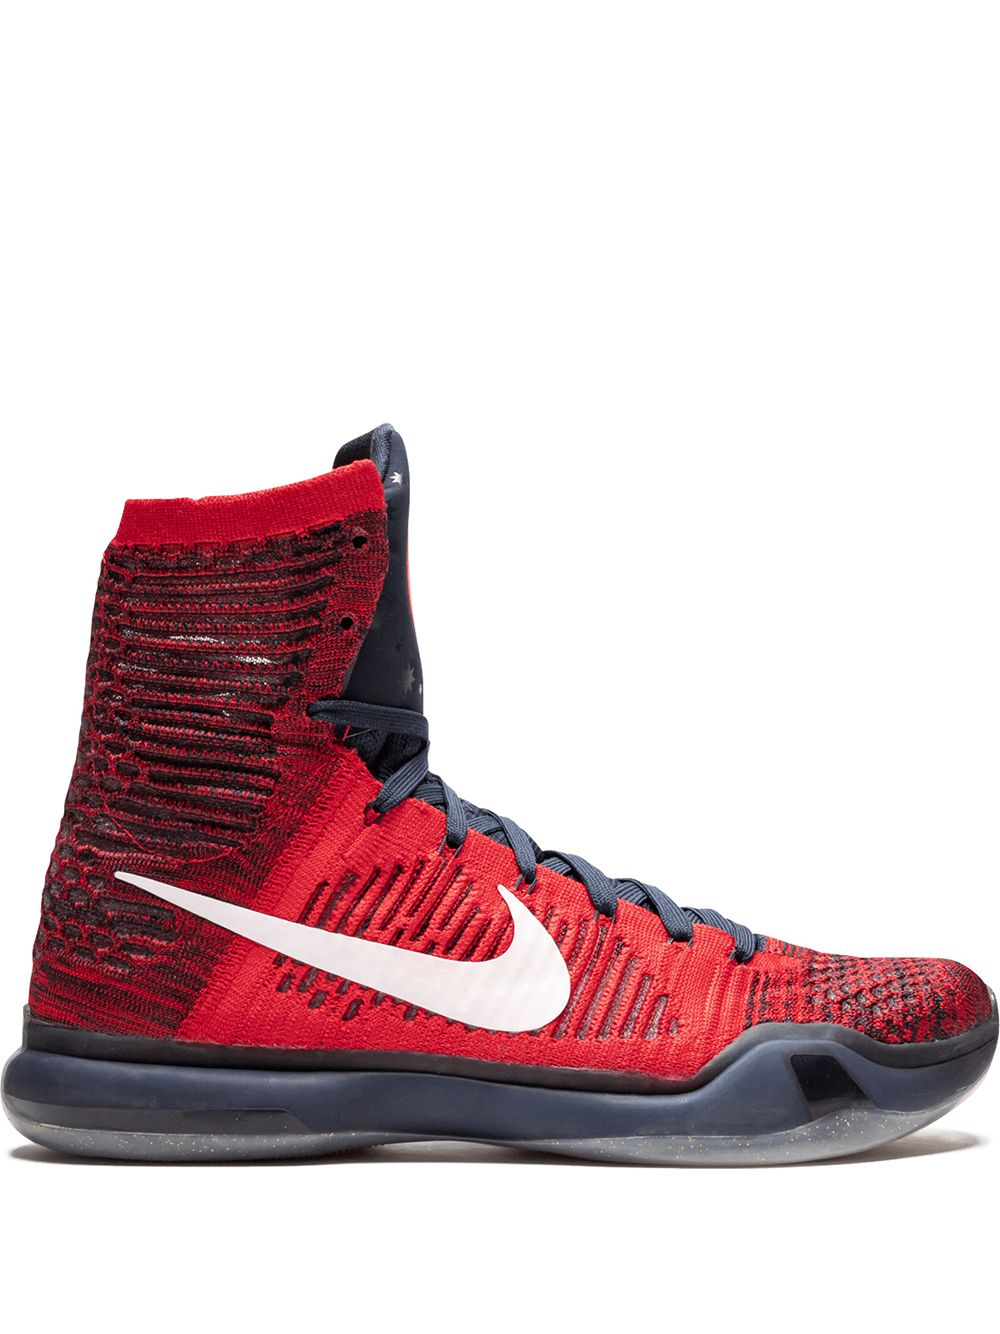 Nike Kobe 10 Elite Sneakers In Red